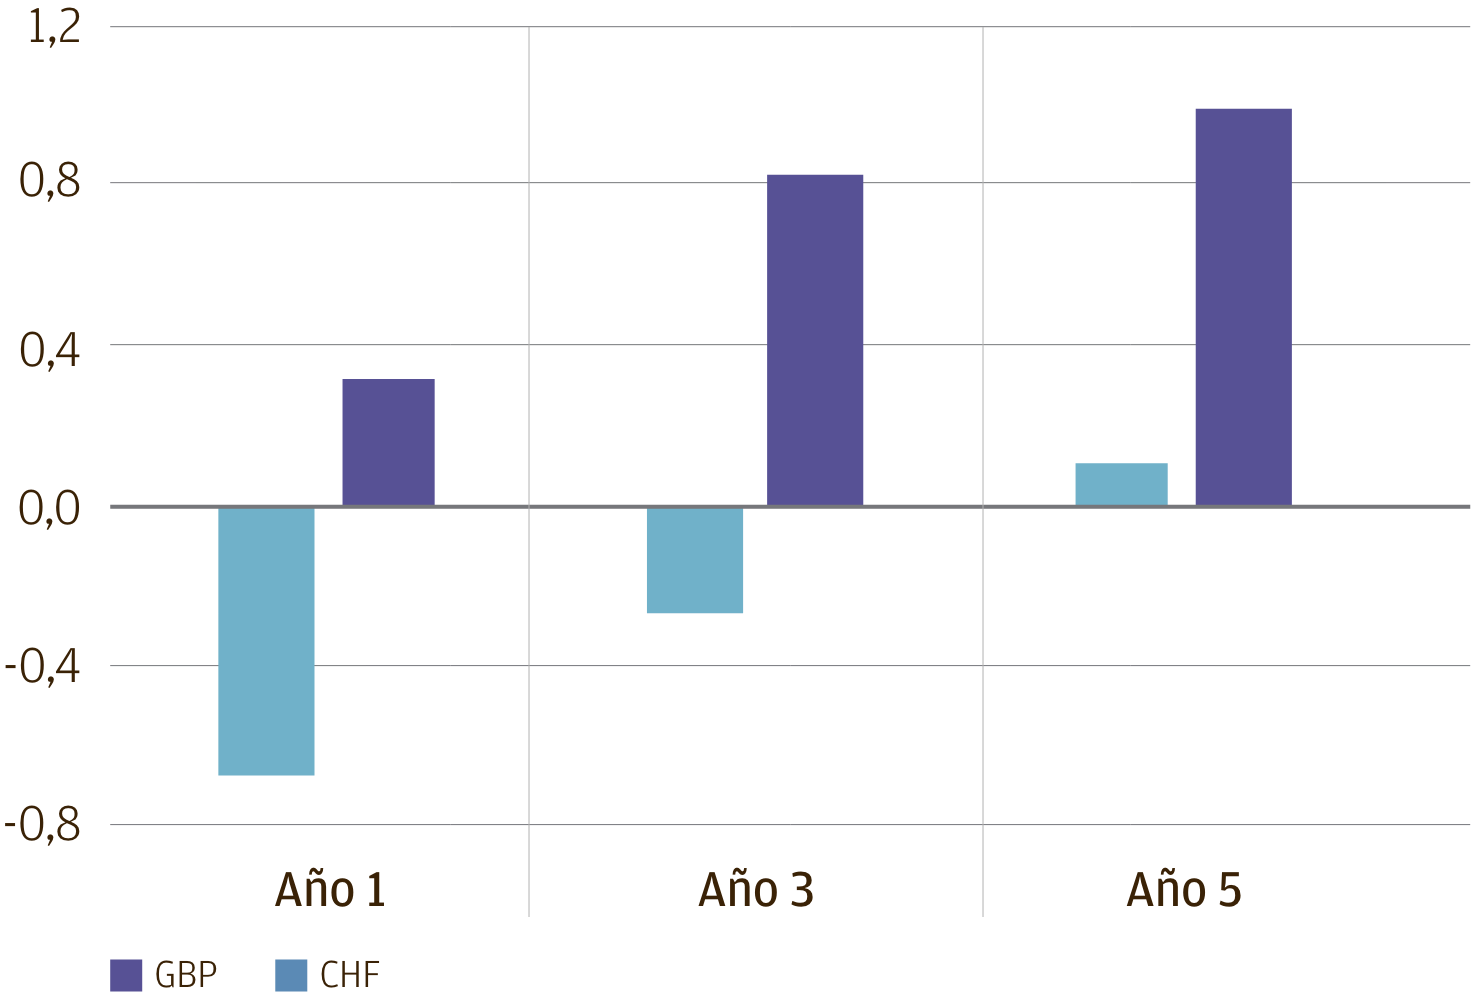 Esta gráfica muestra la tasa de swap indexado a un mes (OIS) para el franco suizo y la libra esterlina a 1, 3 y 5 años. Muestra la tasa a plazo de 1 año en -68 puntos básicos (pb) para el franco suizo y 31 pb para la libra esterlina; la tasa a plazo de 3 años en -28 pb para el franco suizo y 82 pb para la libra esterlina; y la tasa a plazo de 5 años en 10 pb para el franco suizo y 98 pb para la libra esterlina.